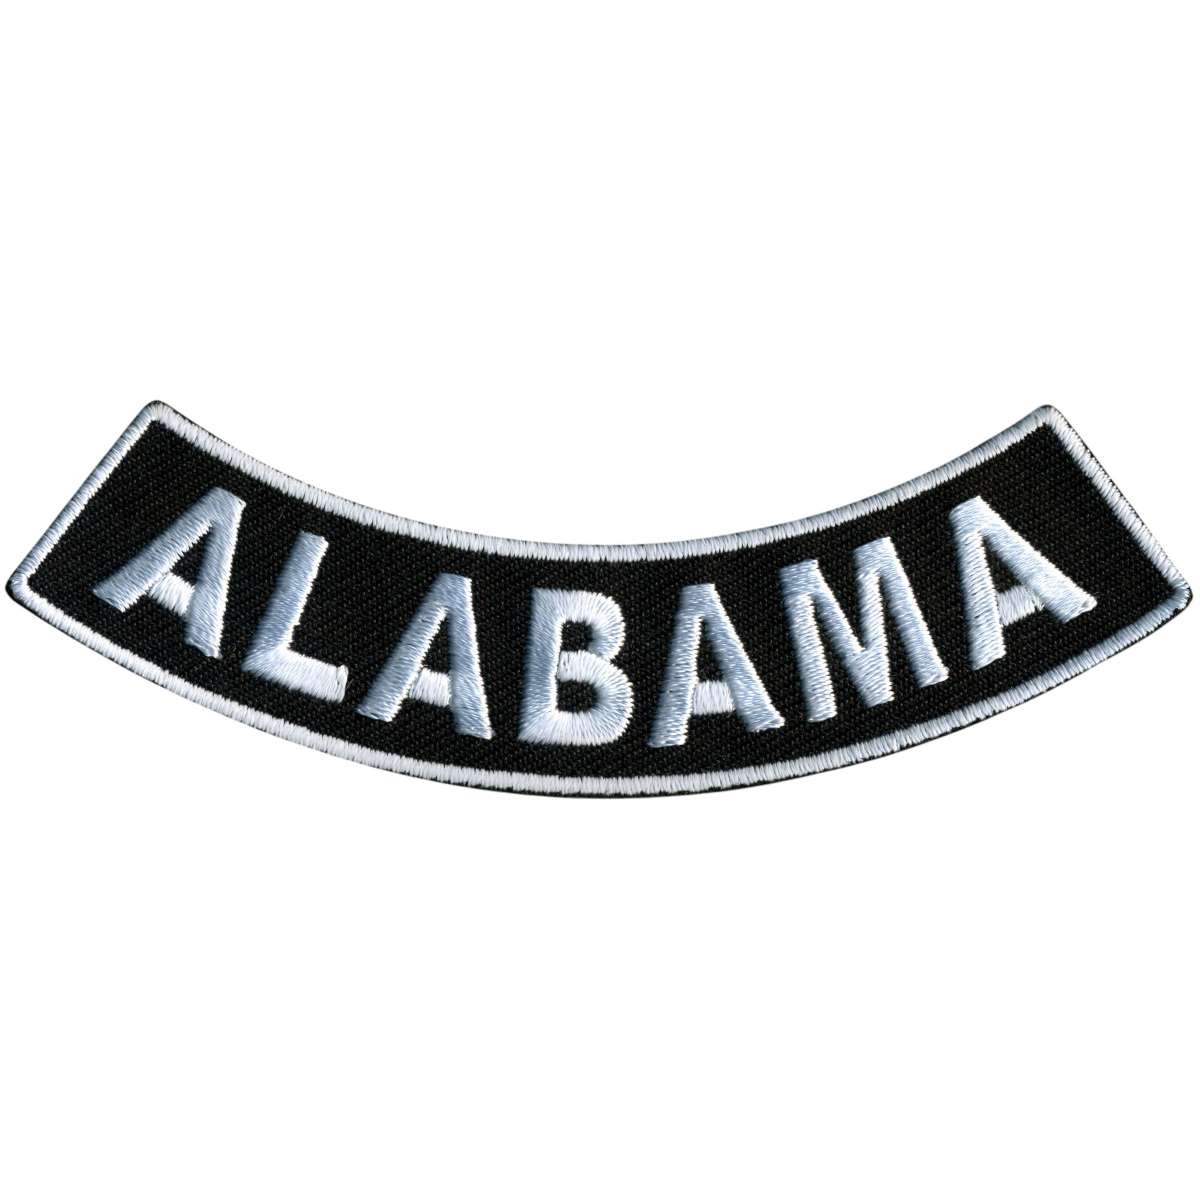 Hot Leathers Alabama 4” X 1” Bottom Rocker Patch PPM5002